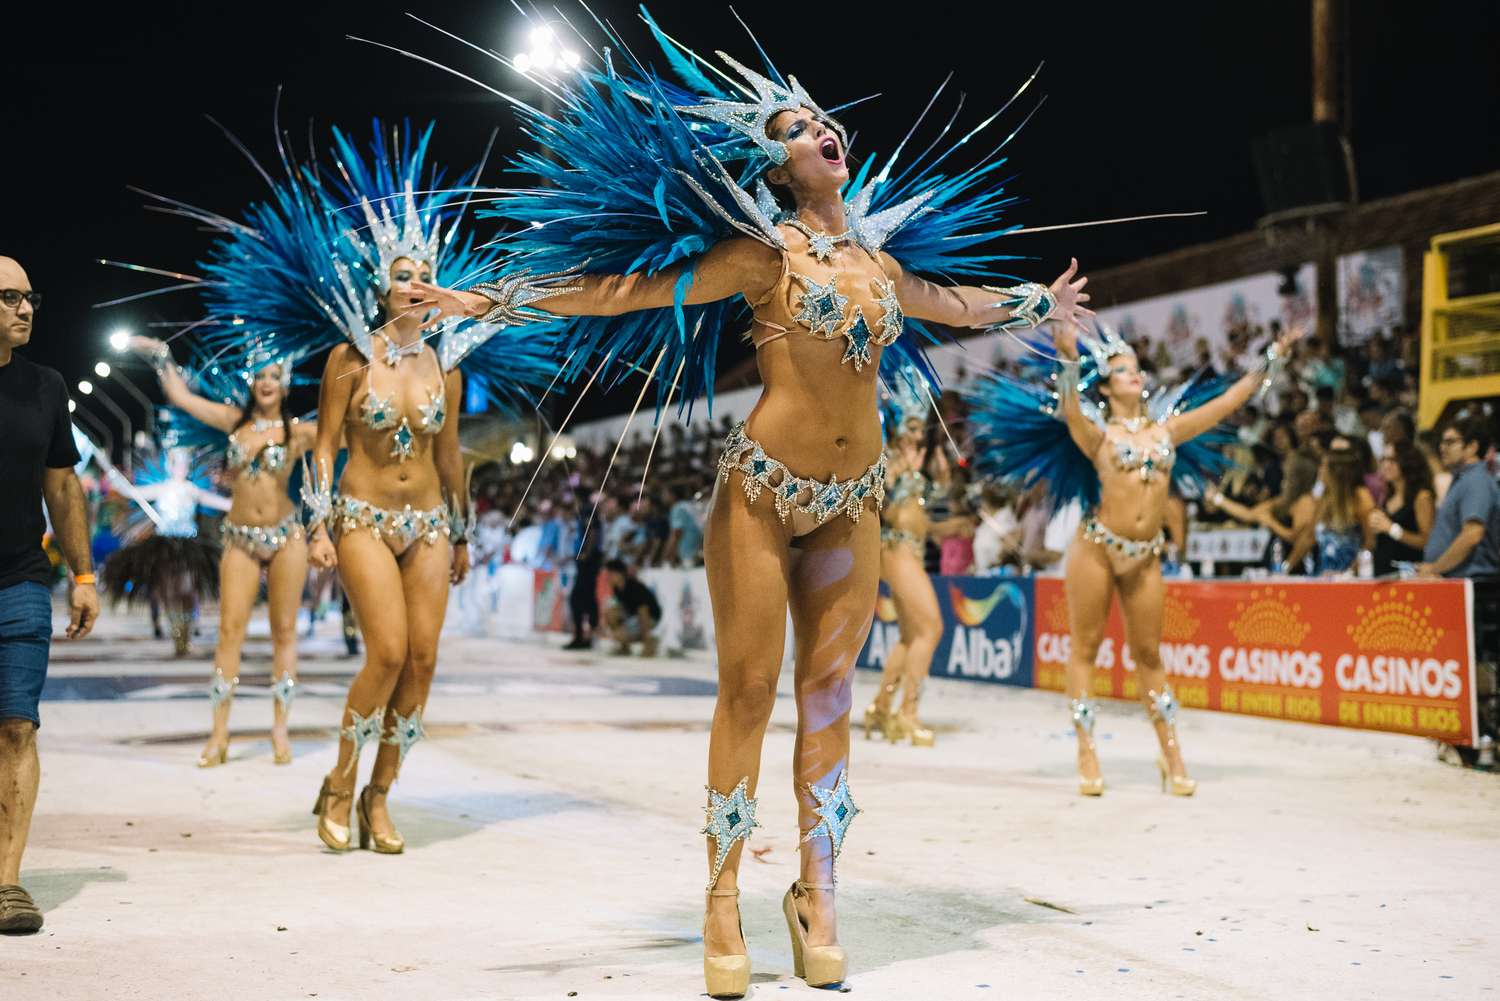 "En un mes máximo vamos a saber si el Carnaval del País volverá a tener cuatro comparsas"